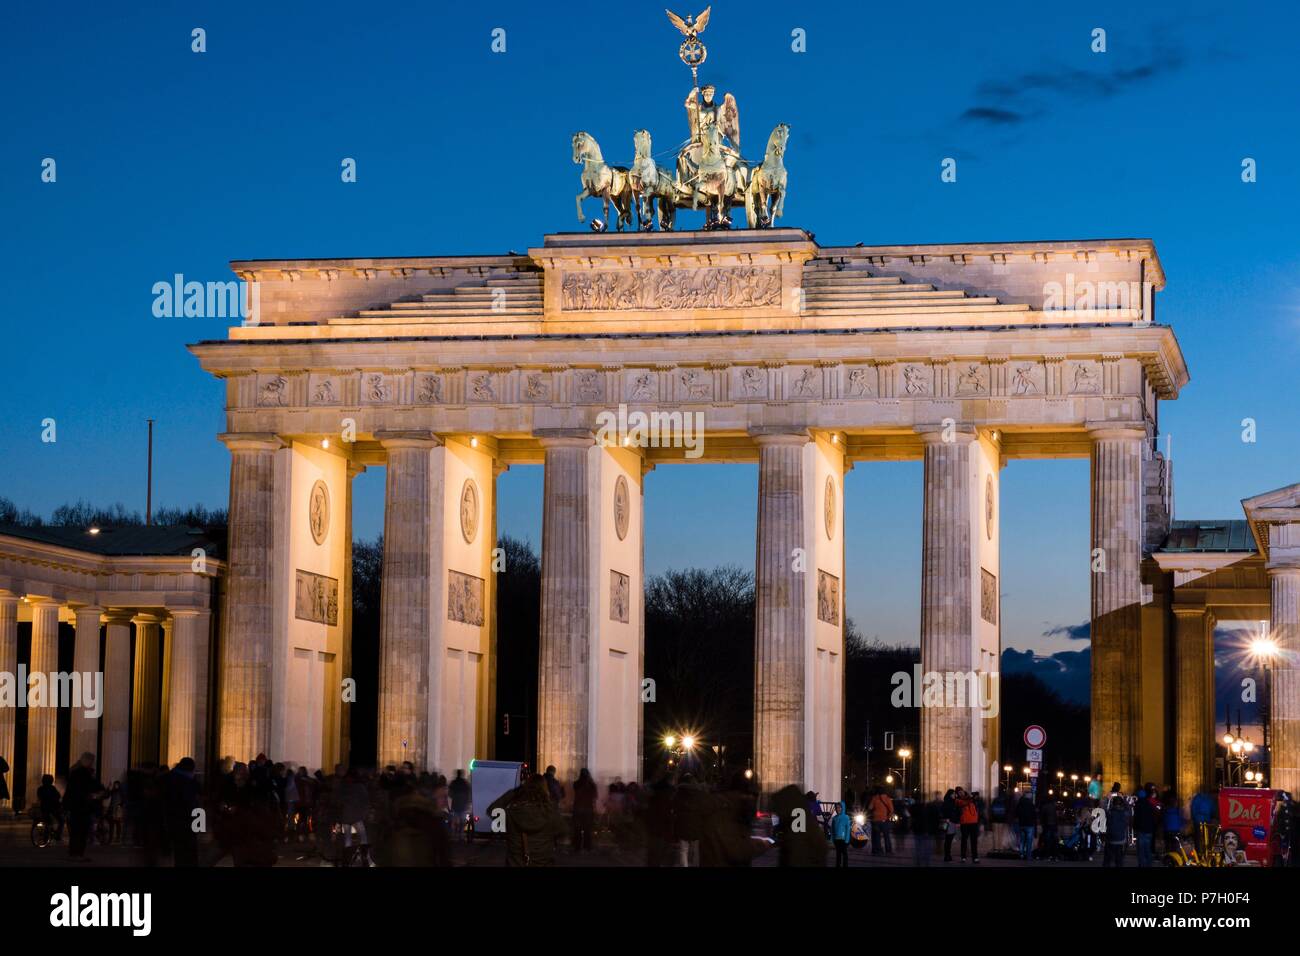 Cuadriga Zierpflanzen, Puerta de,Brandenburg,Obra del arquitecto Carl  Gotthard Langhans, Berlin, Alemania, Europa Stockfotografie - Alamy